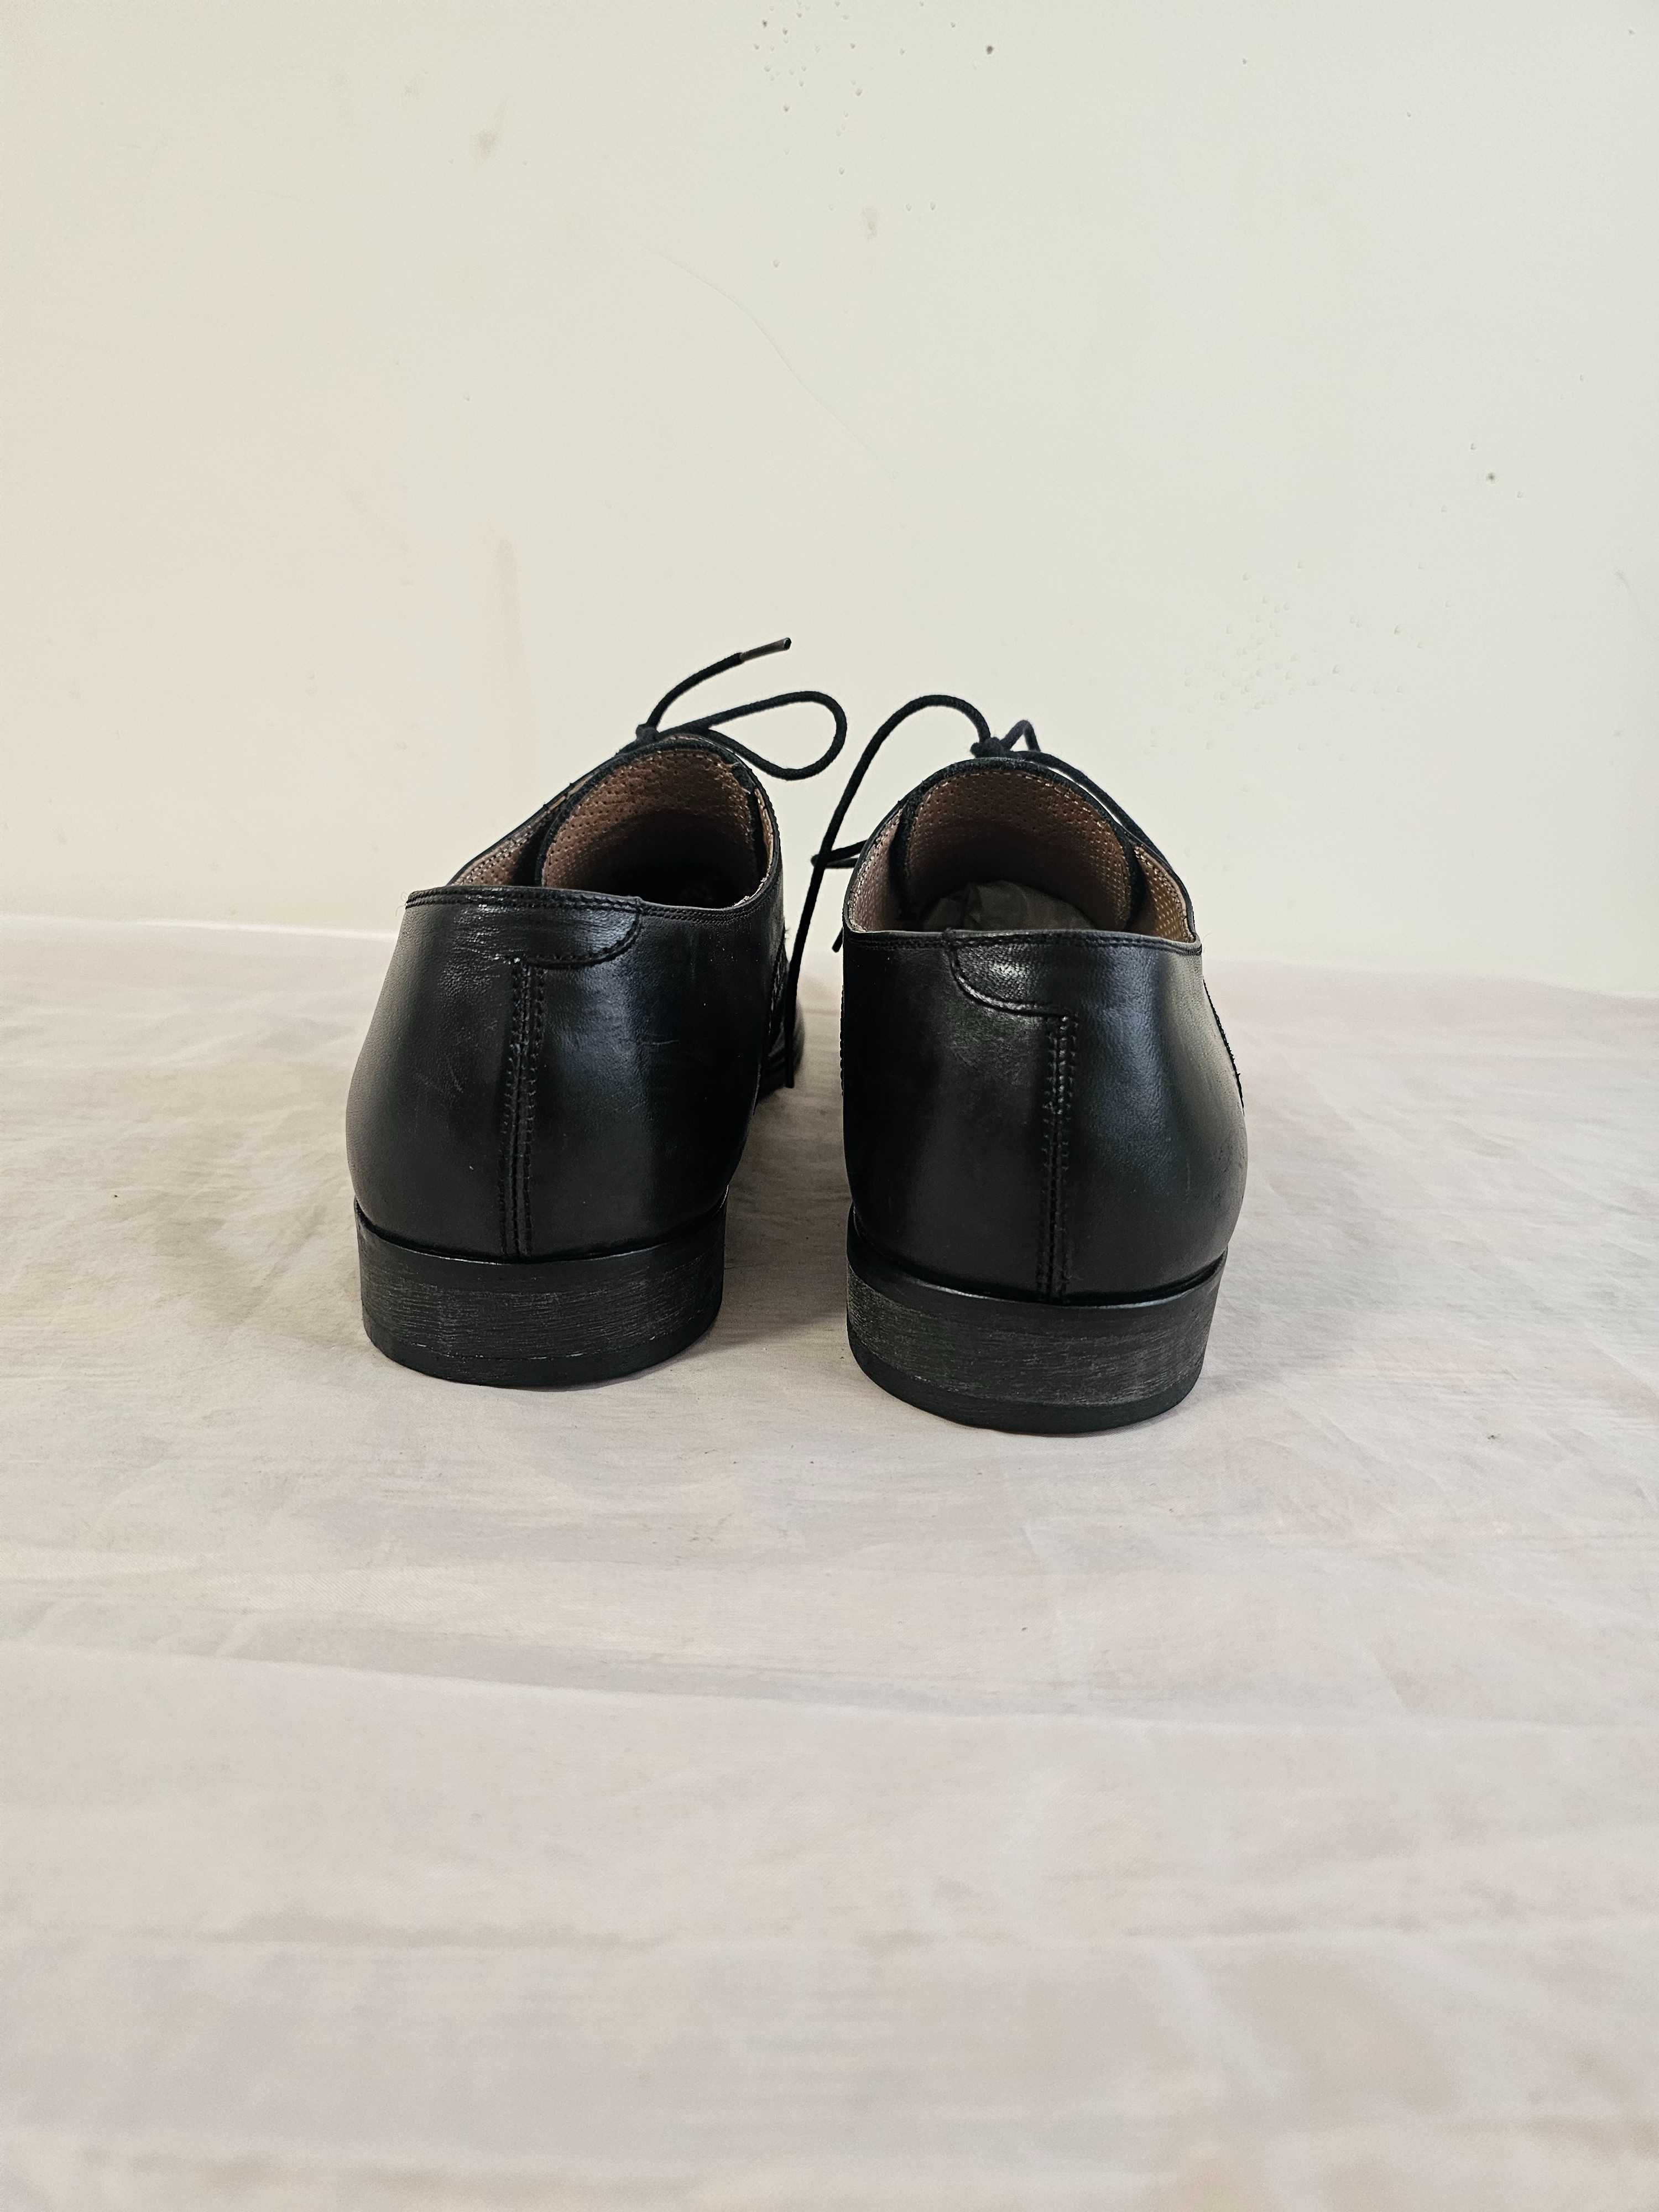 Buty półbuty skórzane Baldinini r. 44 wkładka 29,5 cm